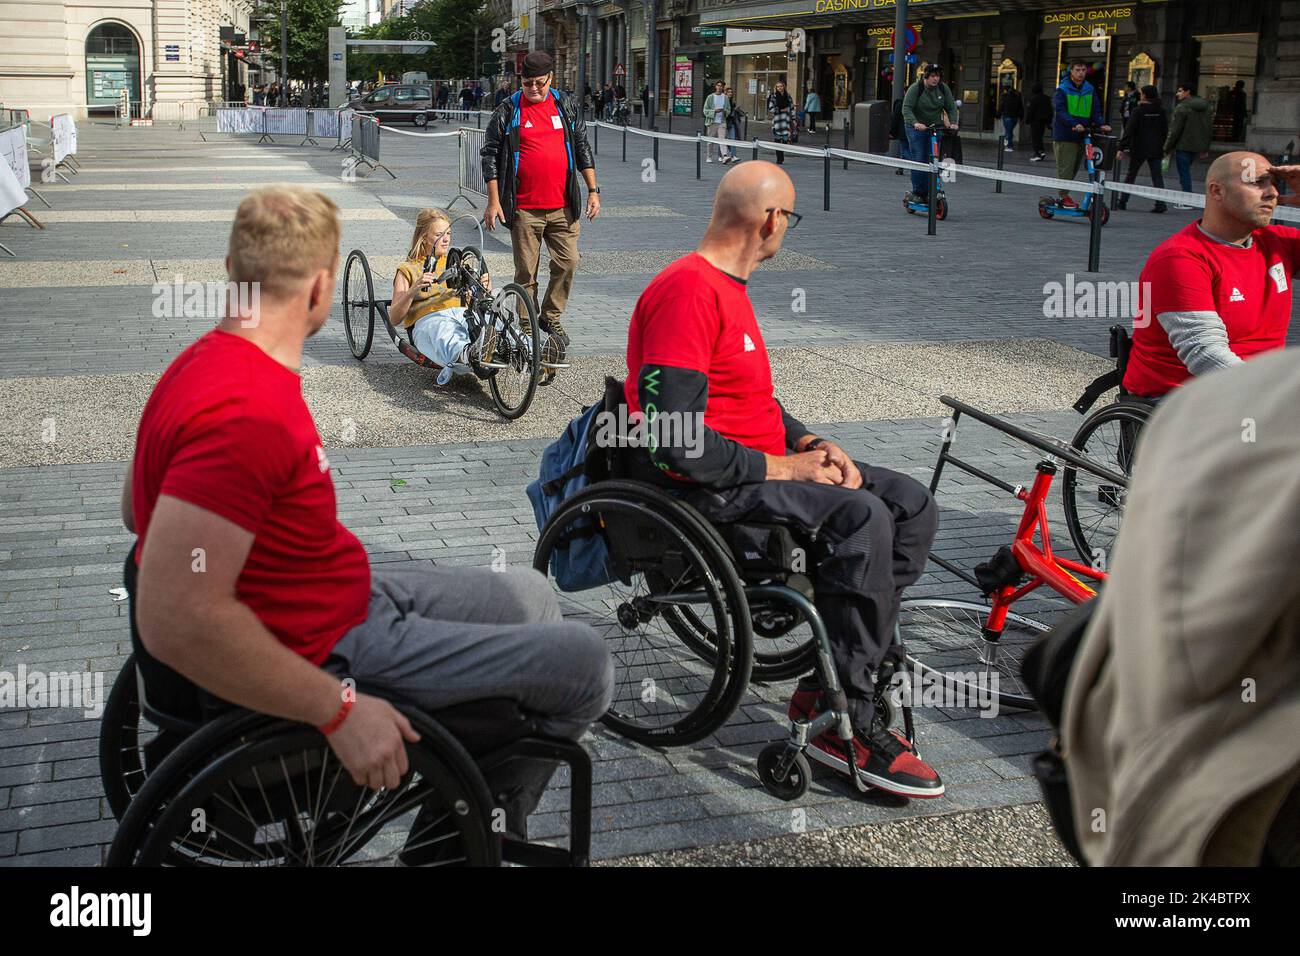 L'immagine mostra l'evento 'Road to Paris' in occasione del Paralympic Day 2022, sabato 01 ottobre 2022 a Bruxelles, in attesa dei Giochi Paralympic 2024 di Parigi. FOTO DI BELGA JAMES ARTHUR GEKIERE Foto Stock